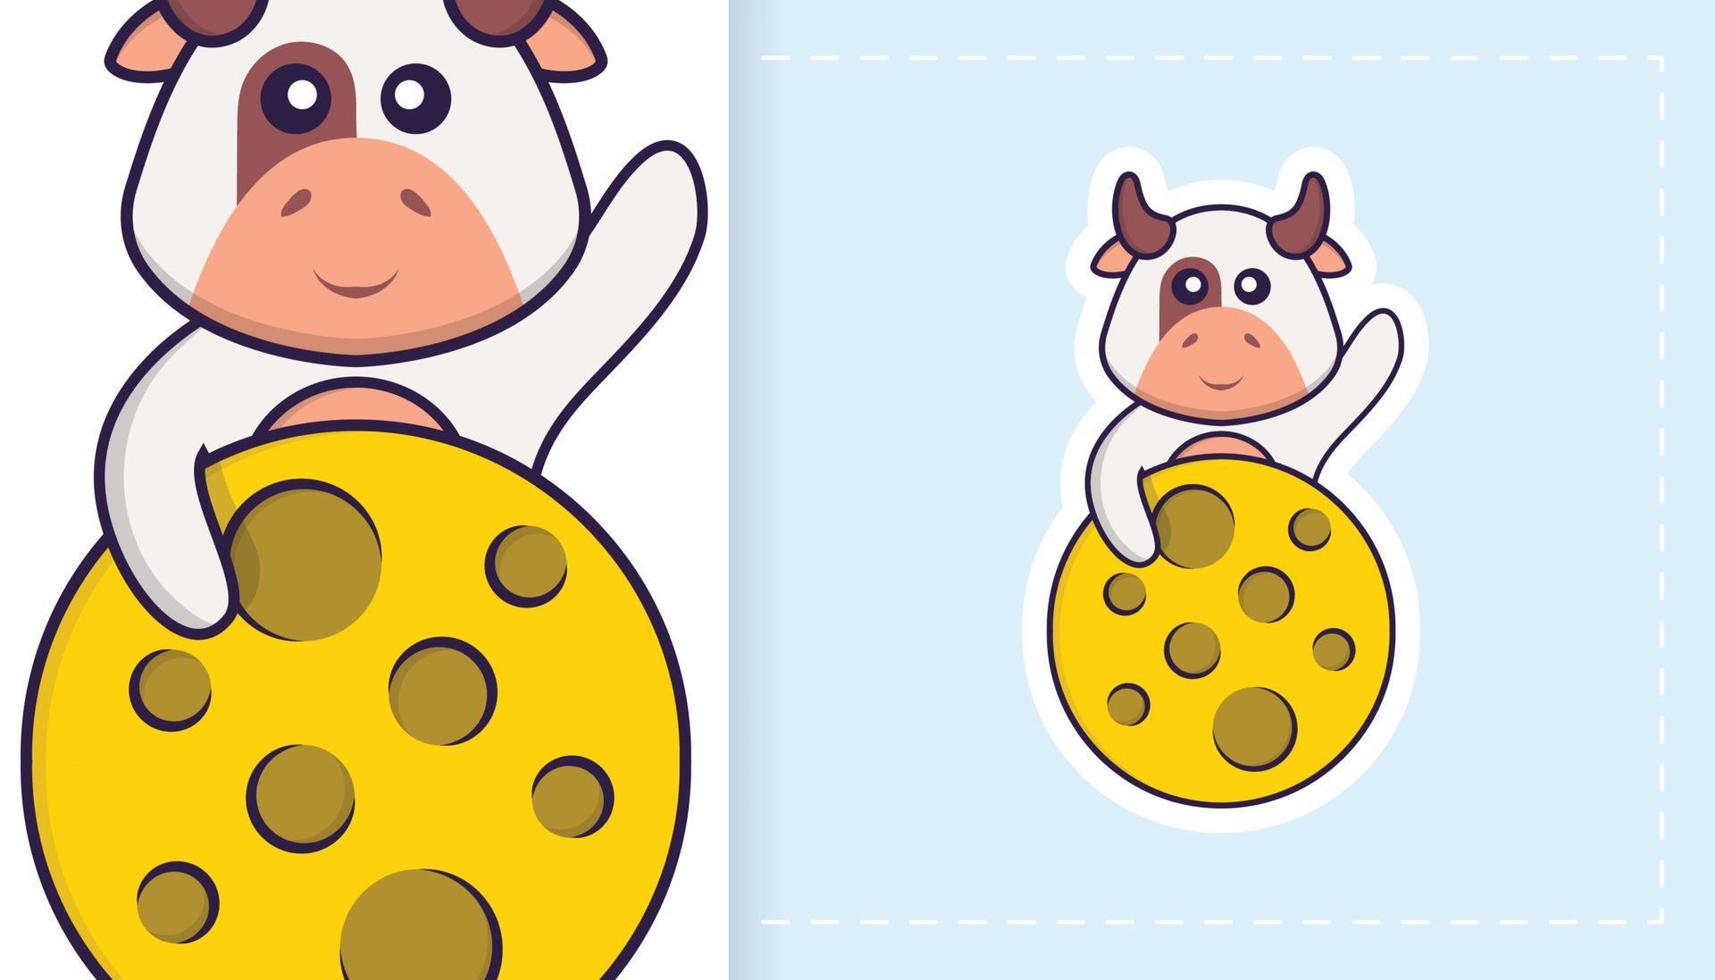 schattig koe mascotte karakter. kan worden gebruikt voor stickers, patches, textiel, papier. vector illustratie